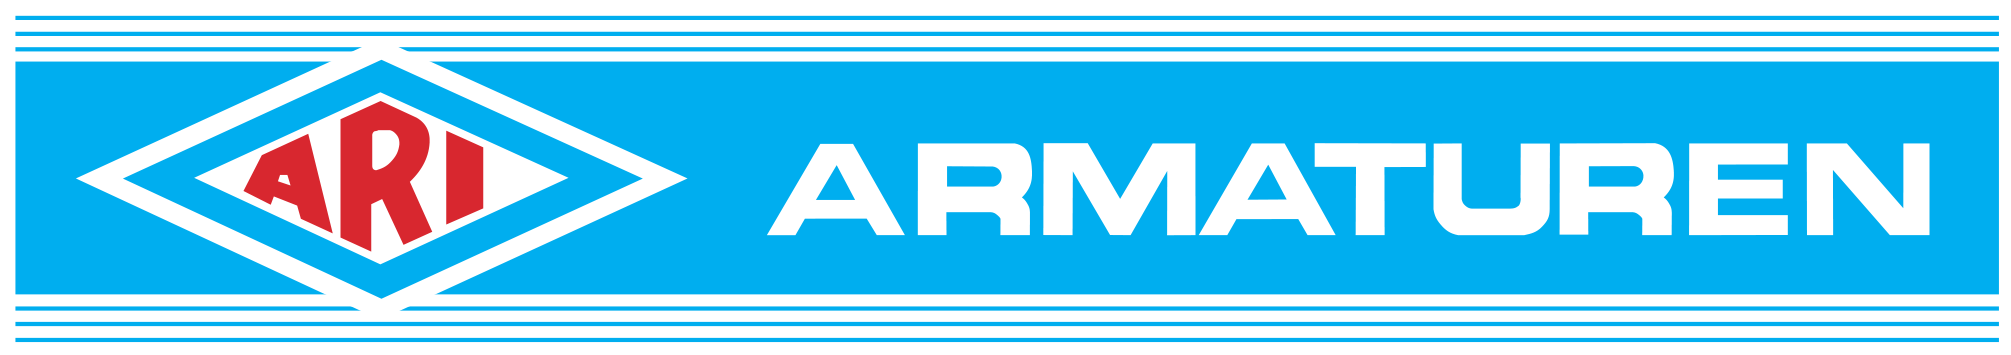 ARI-Armaturen_Logo